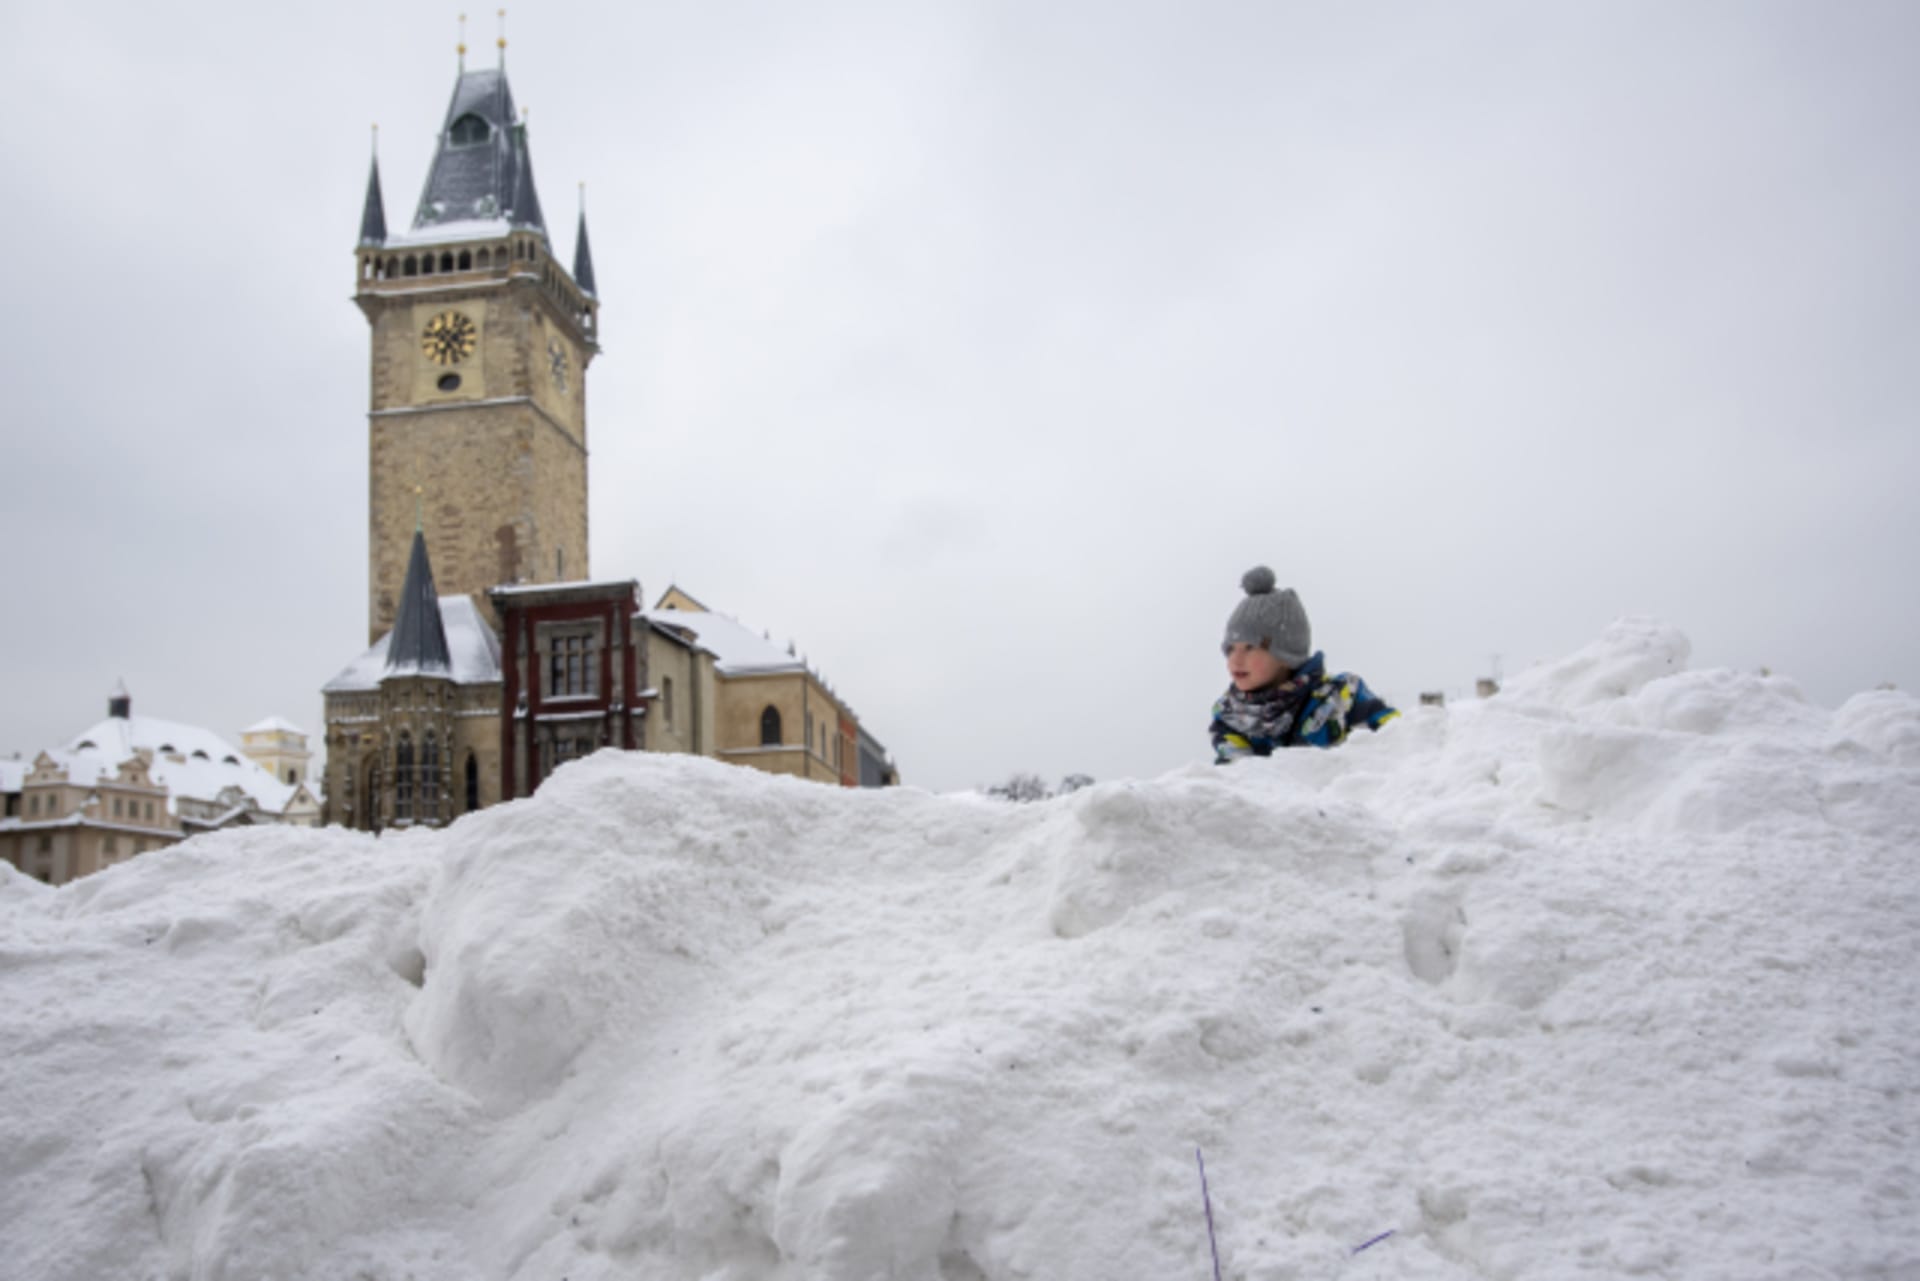 Rolba nahrnula na Staroměstské náměstí velké množství sněhu.